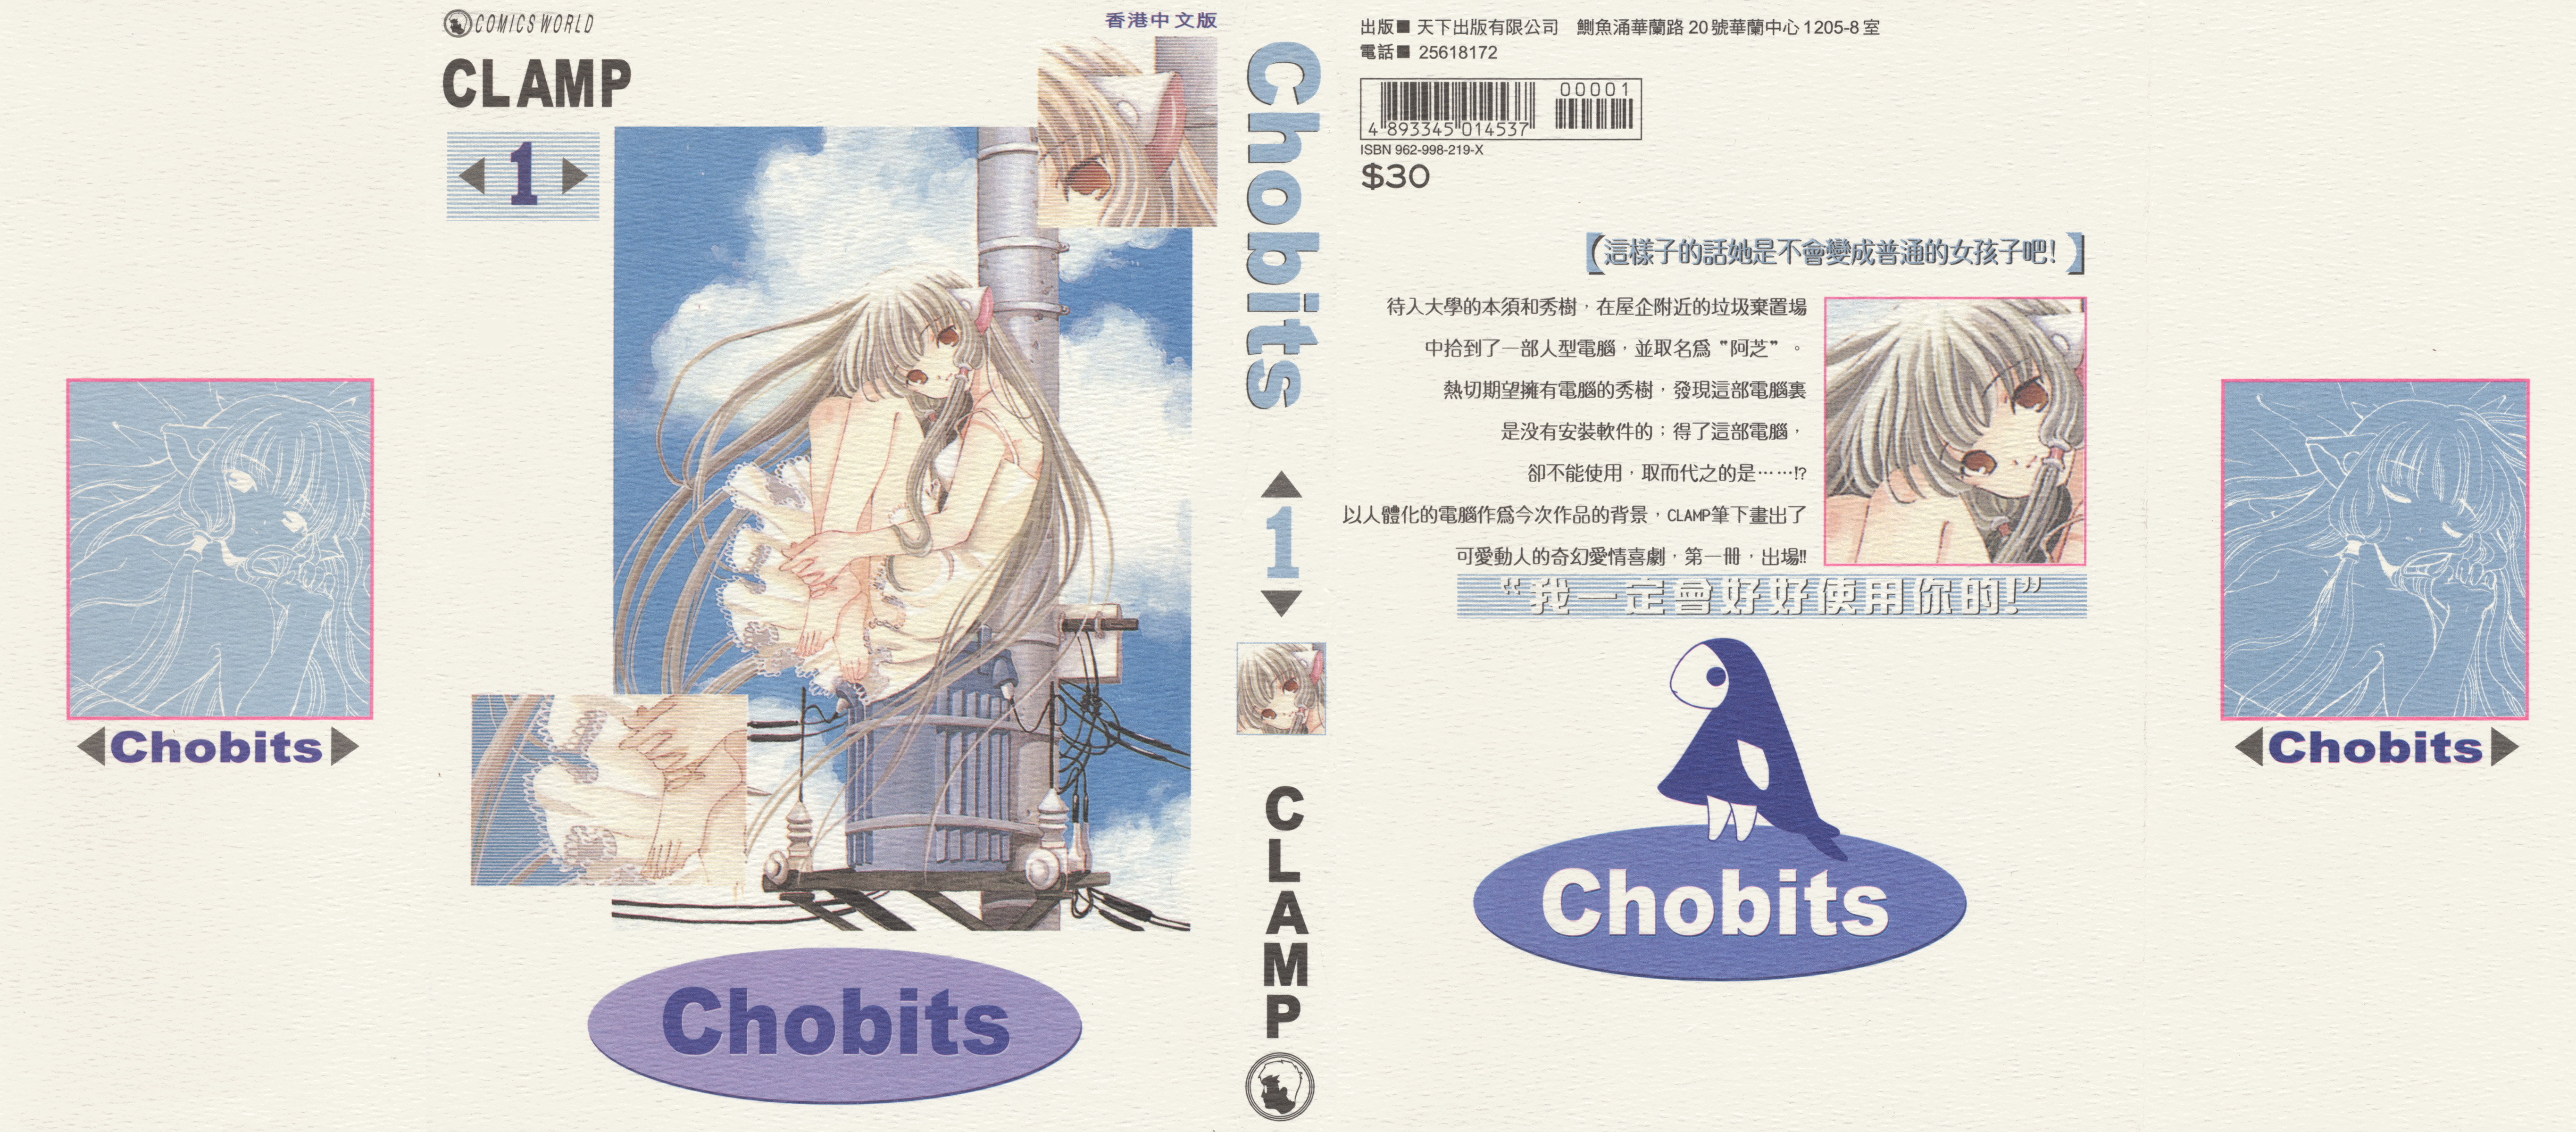 【漫画】【完结】《Chobits》JPG 百度网盘下载